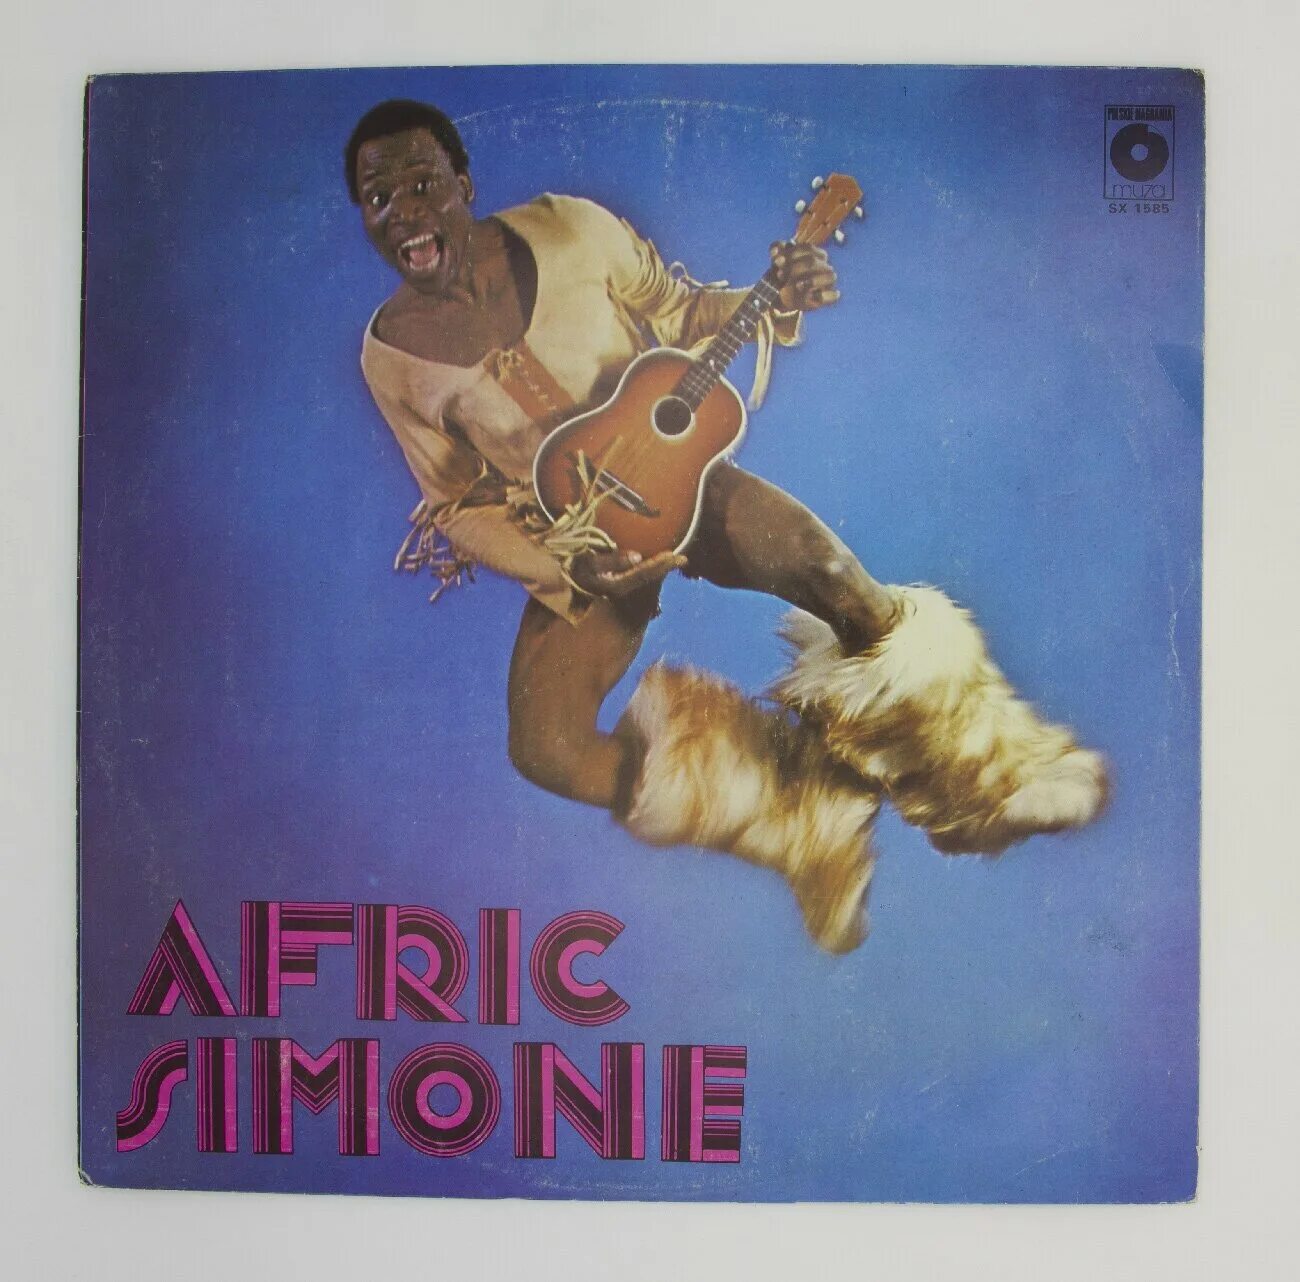 Африк Симон пластинка 1980. Afric Simone. Африк Симон винил. Африк Симон диск винил. Симон не вините бога